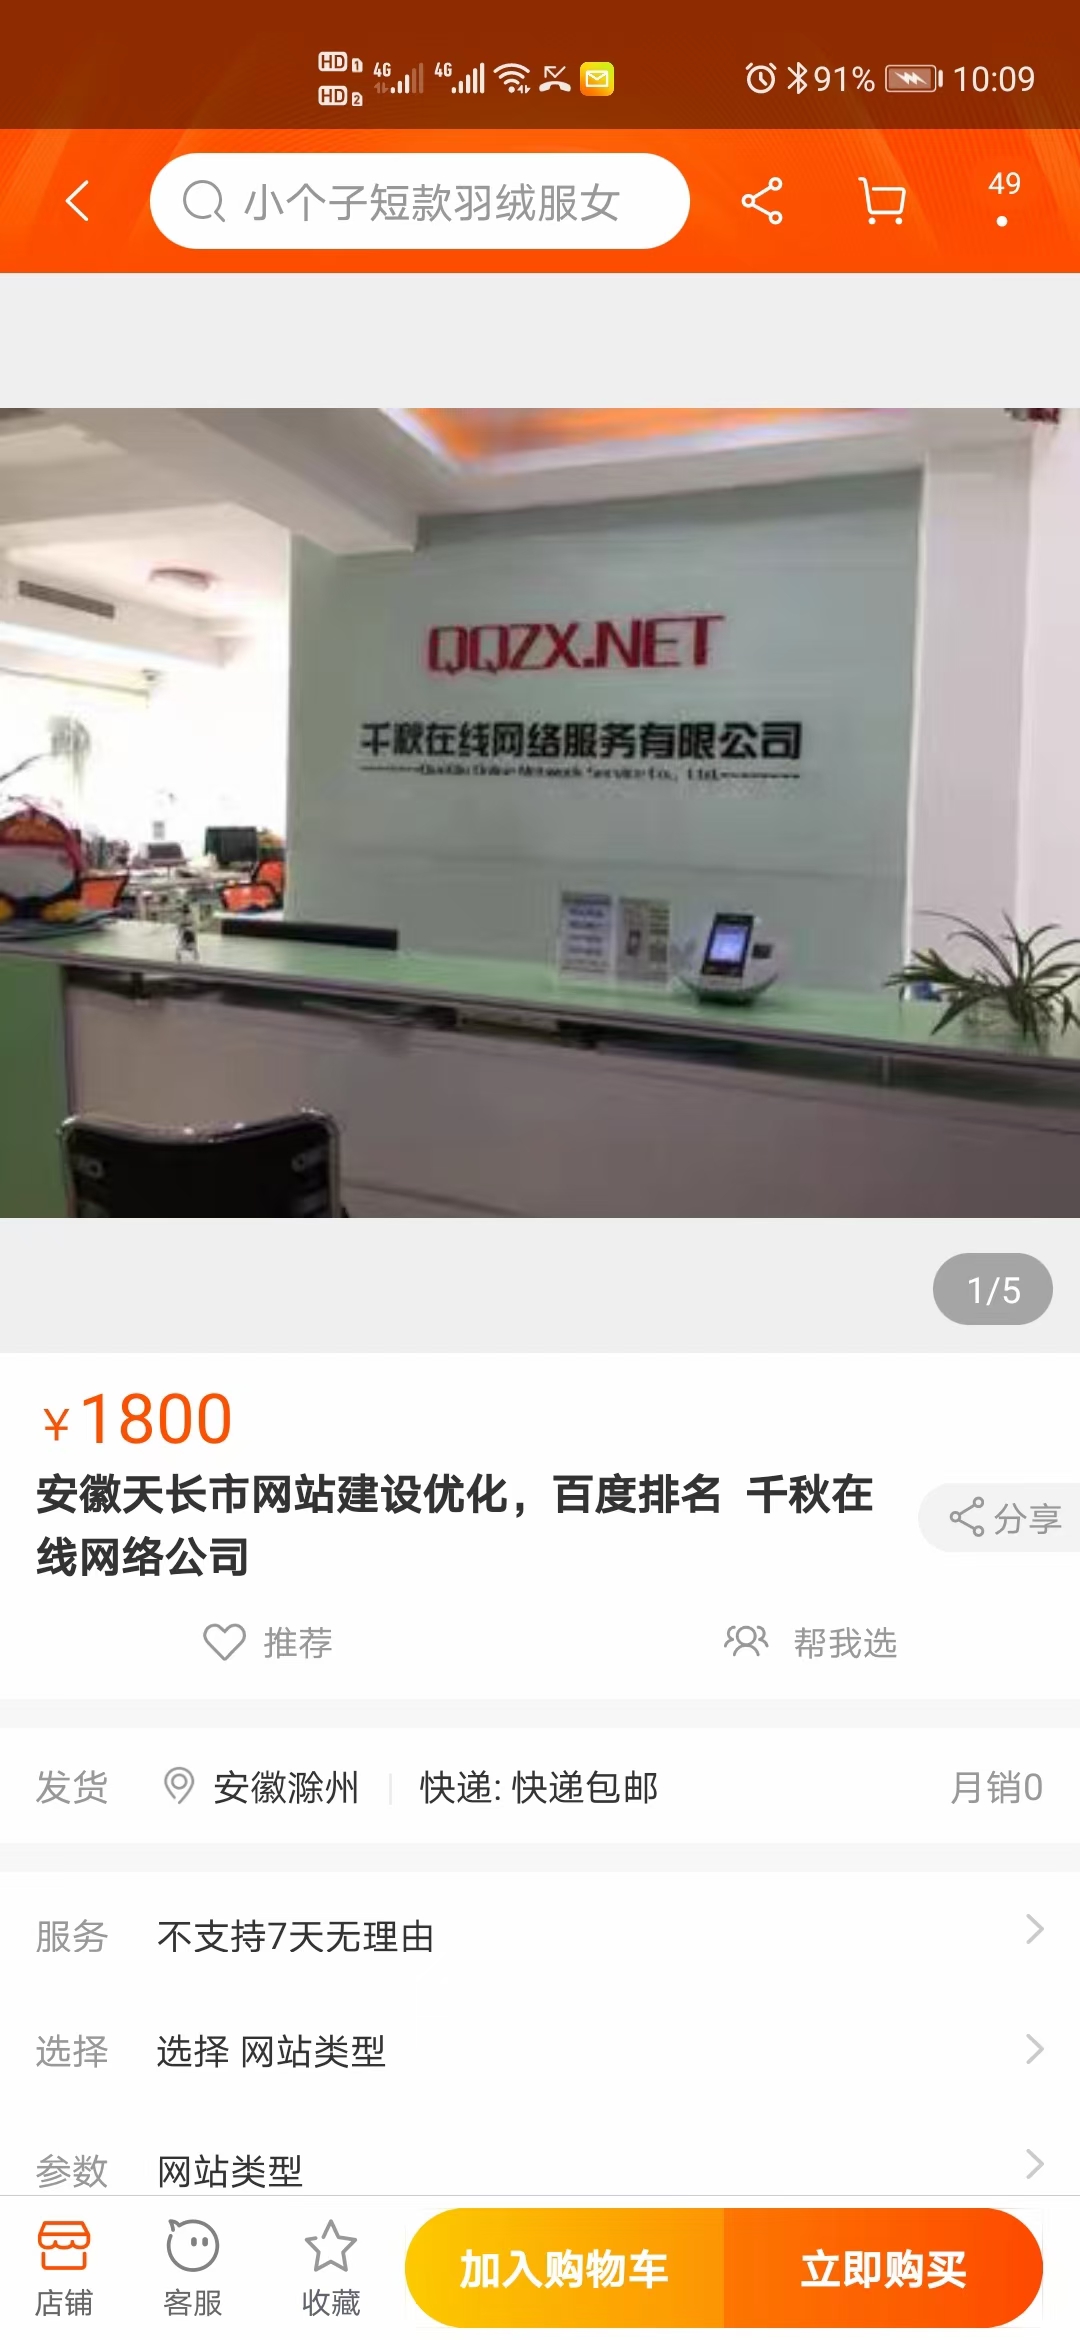 天长千秋网络公司成功入驻抖音推广运营，百度，淘宝店铺排名在前